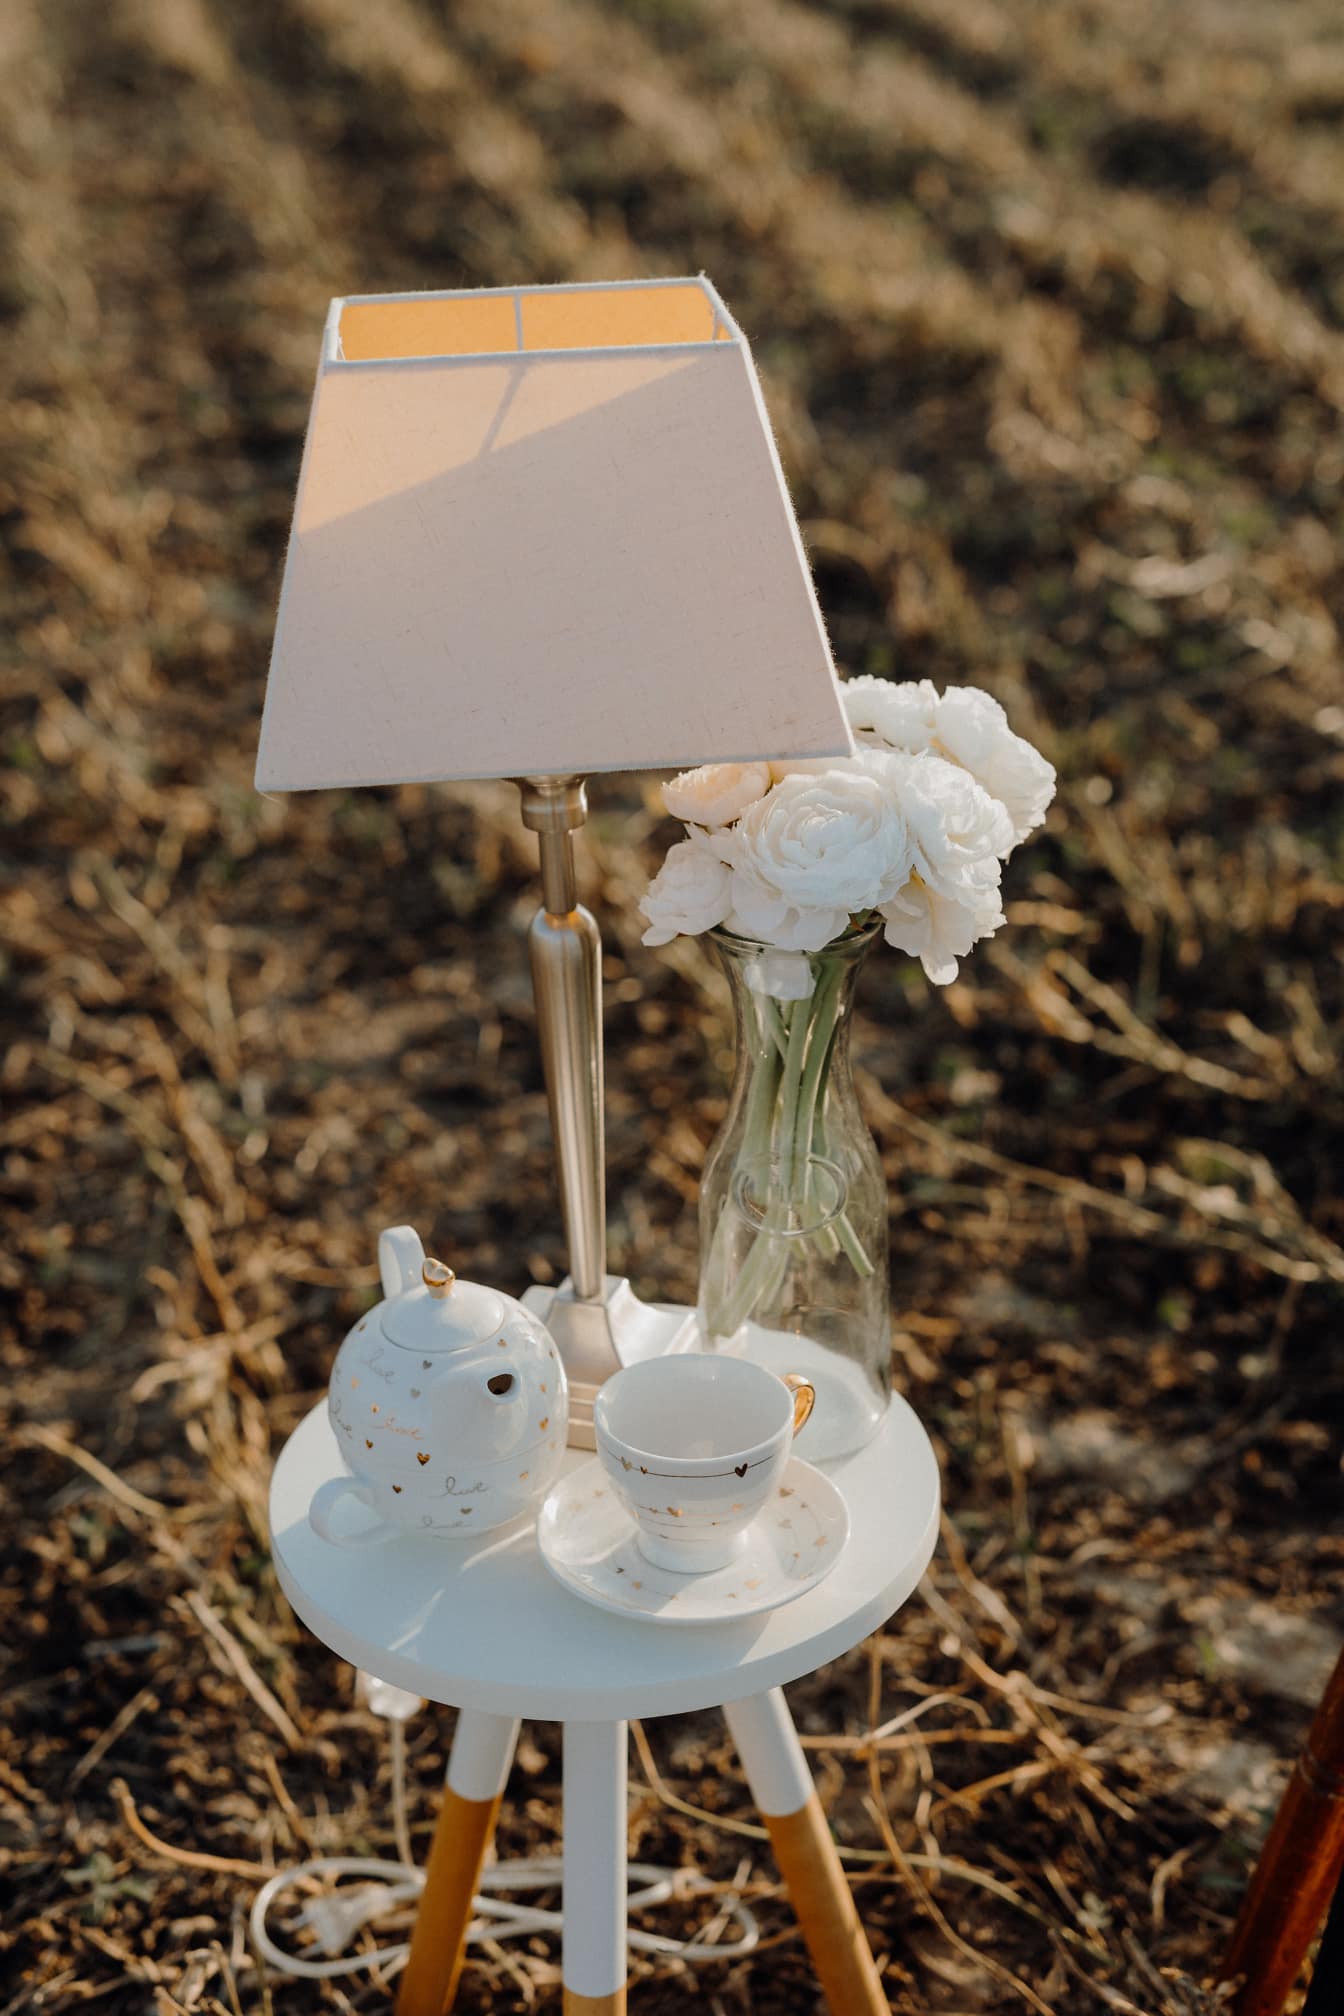 Tisch mit moderner Lampe, Teekanne aus Porzellan und Glasvase mit weißen Rosenblüten